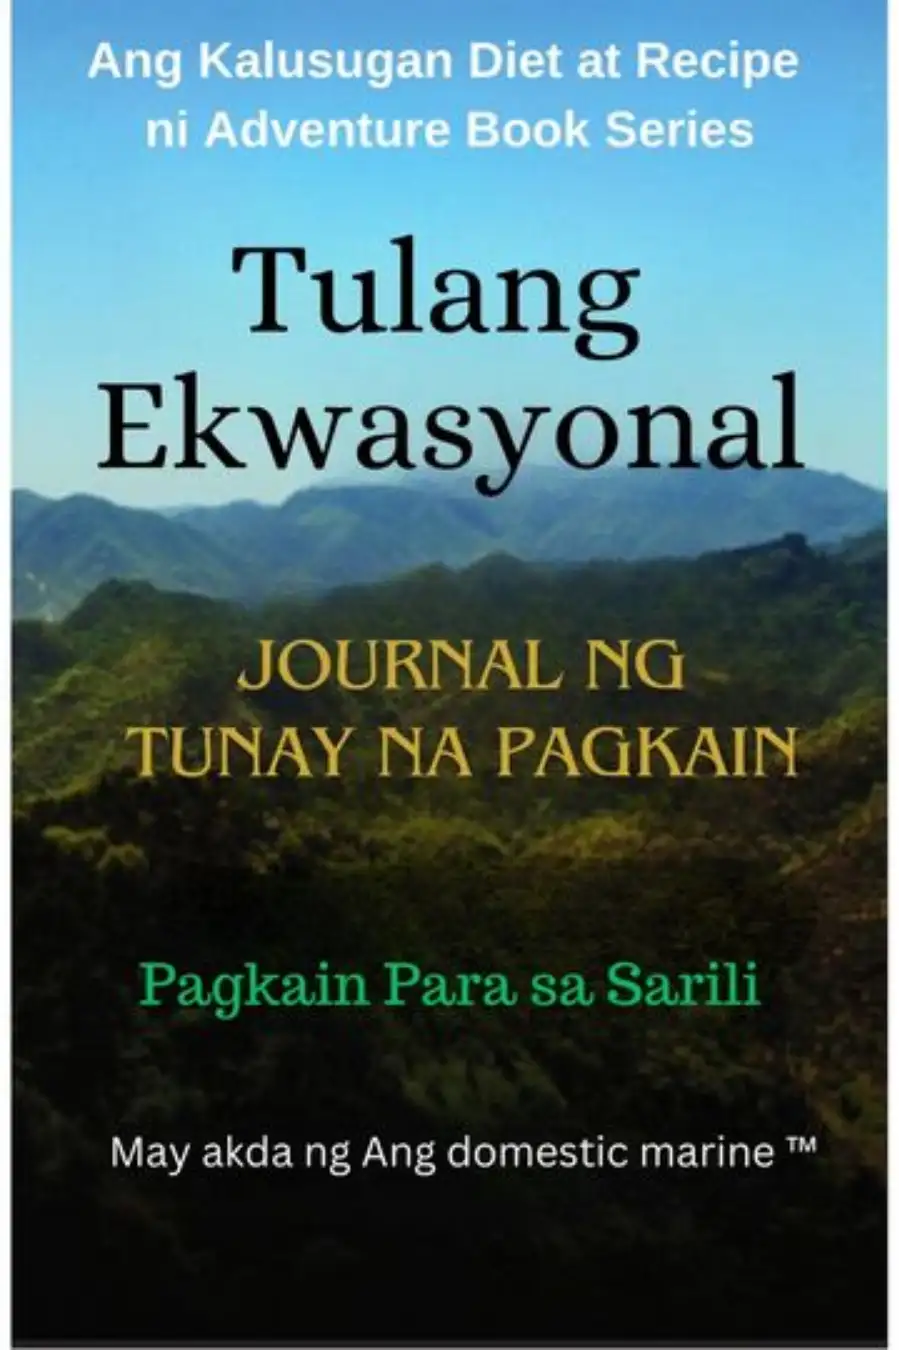 Tulang Ekwasyonal Journal Ng Tunay Na Pagkain Image